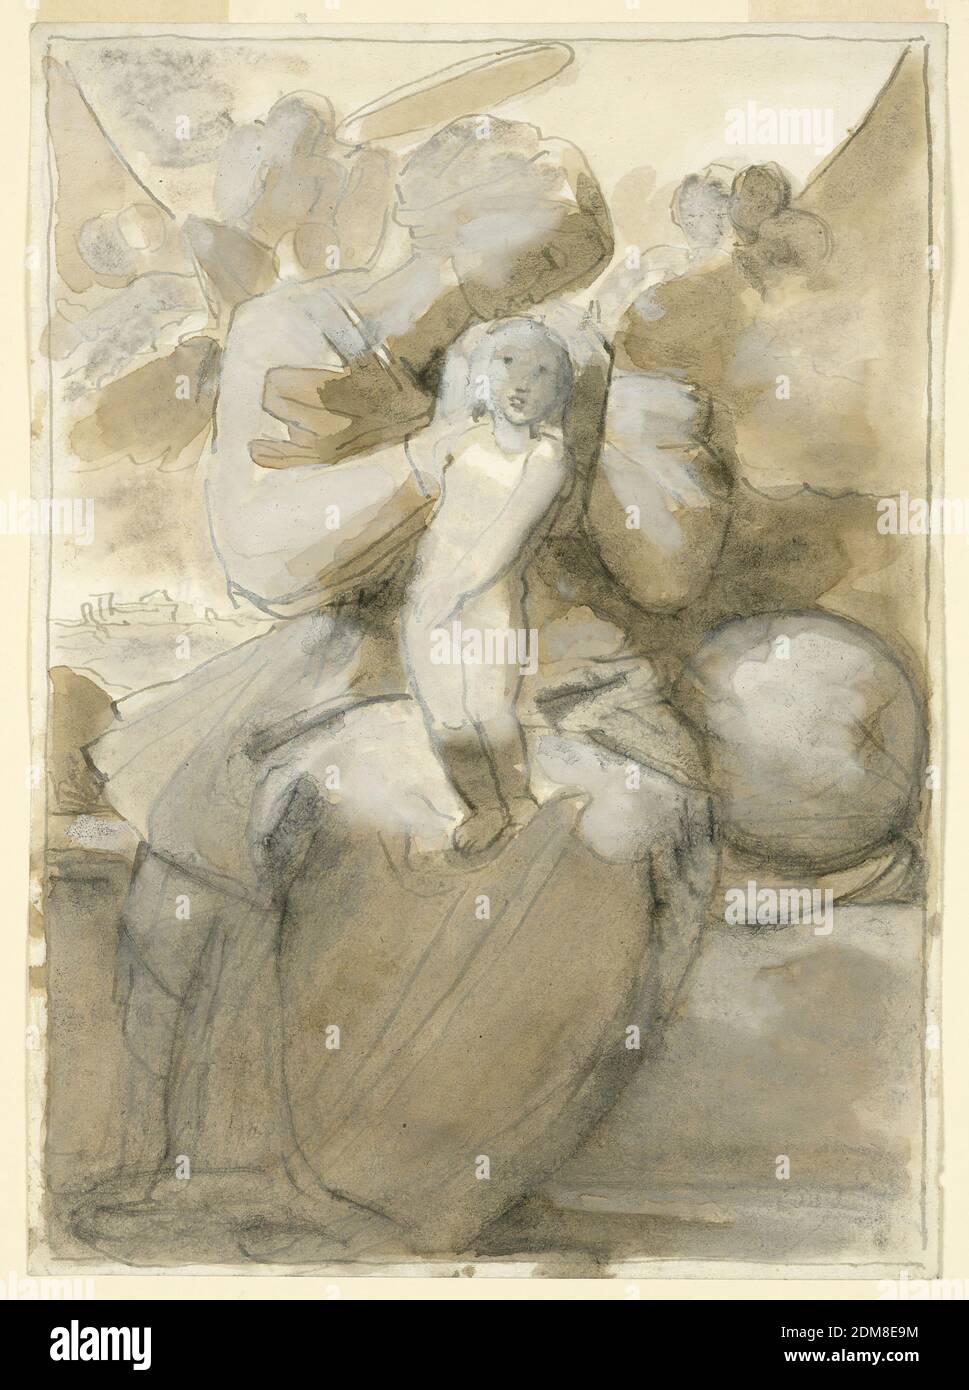 Die Jungfrau mit dem Kind, Fortunato Duranti, italienisch, 1787 - 1863, Pinsel und braunes Aquarell, weiß aufgehellt auf Papier; Pinsel und braunes Aquarell auf Papier, die Jungfrau sitzt auf einer Bank im Freien. Das Kind steht in ihrem Schoß. Sie legt ihre Hand auf seinen Kopf, den sie küssen will. Neben ihr, rechts, liegt der Globus. Hinter ihrem Kopf ist ein großer heller Halbkreis, offenbar die Sonne. Cherubim sind in den Wolken und links; teilweise im Halbkreis ist eine Gruppe von scheinbar sitzenden männlichen Figuren und einem Kind. Verso: Andere Seite: Mit kleinen Variationen die gleiche Komposition Stockfoto